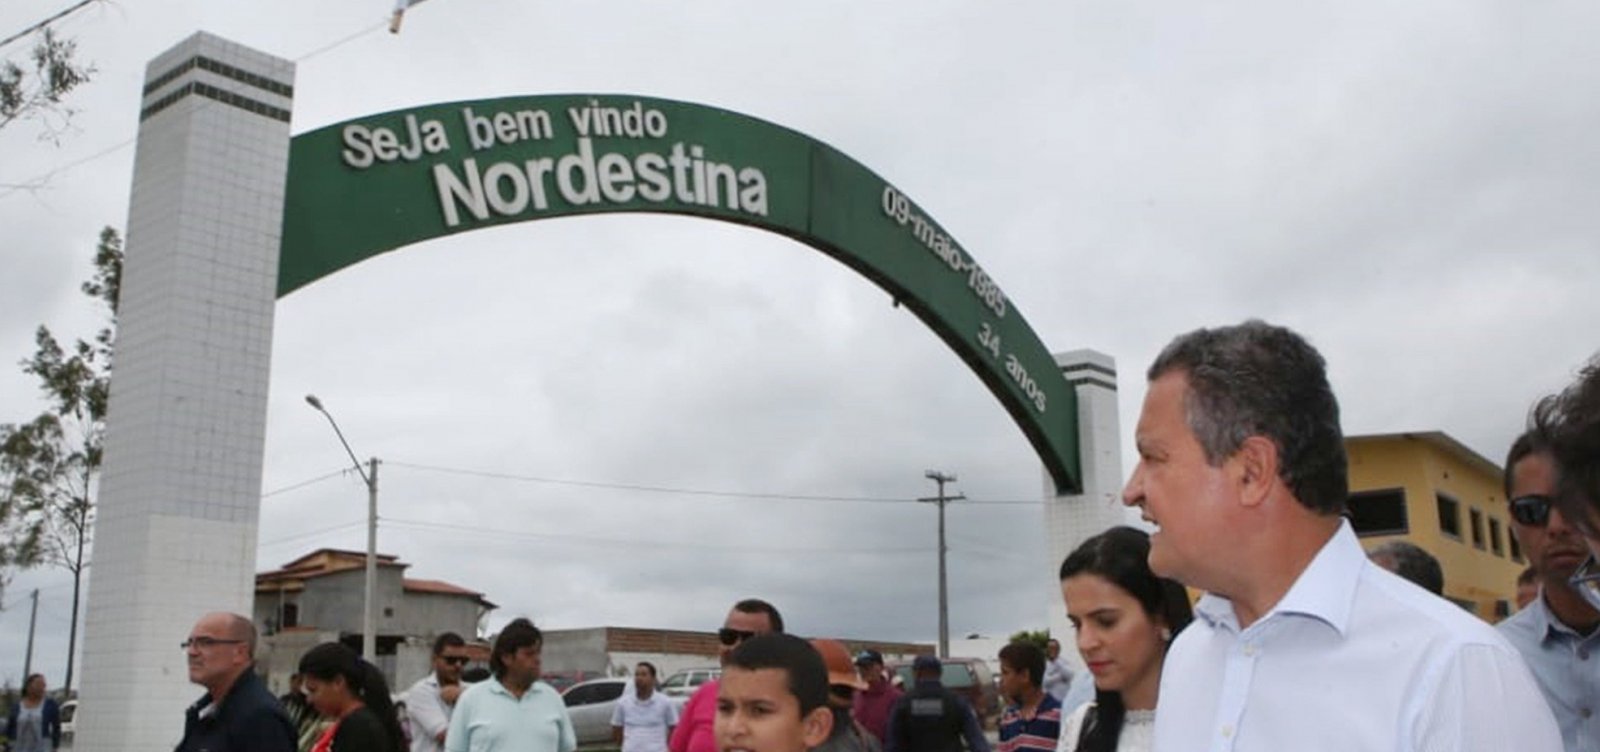 Município de Nordestina recebe R$ 451 mil em investimento no Bahia Produtiva